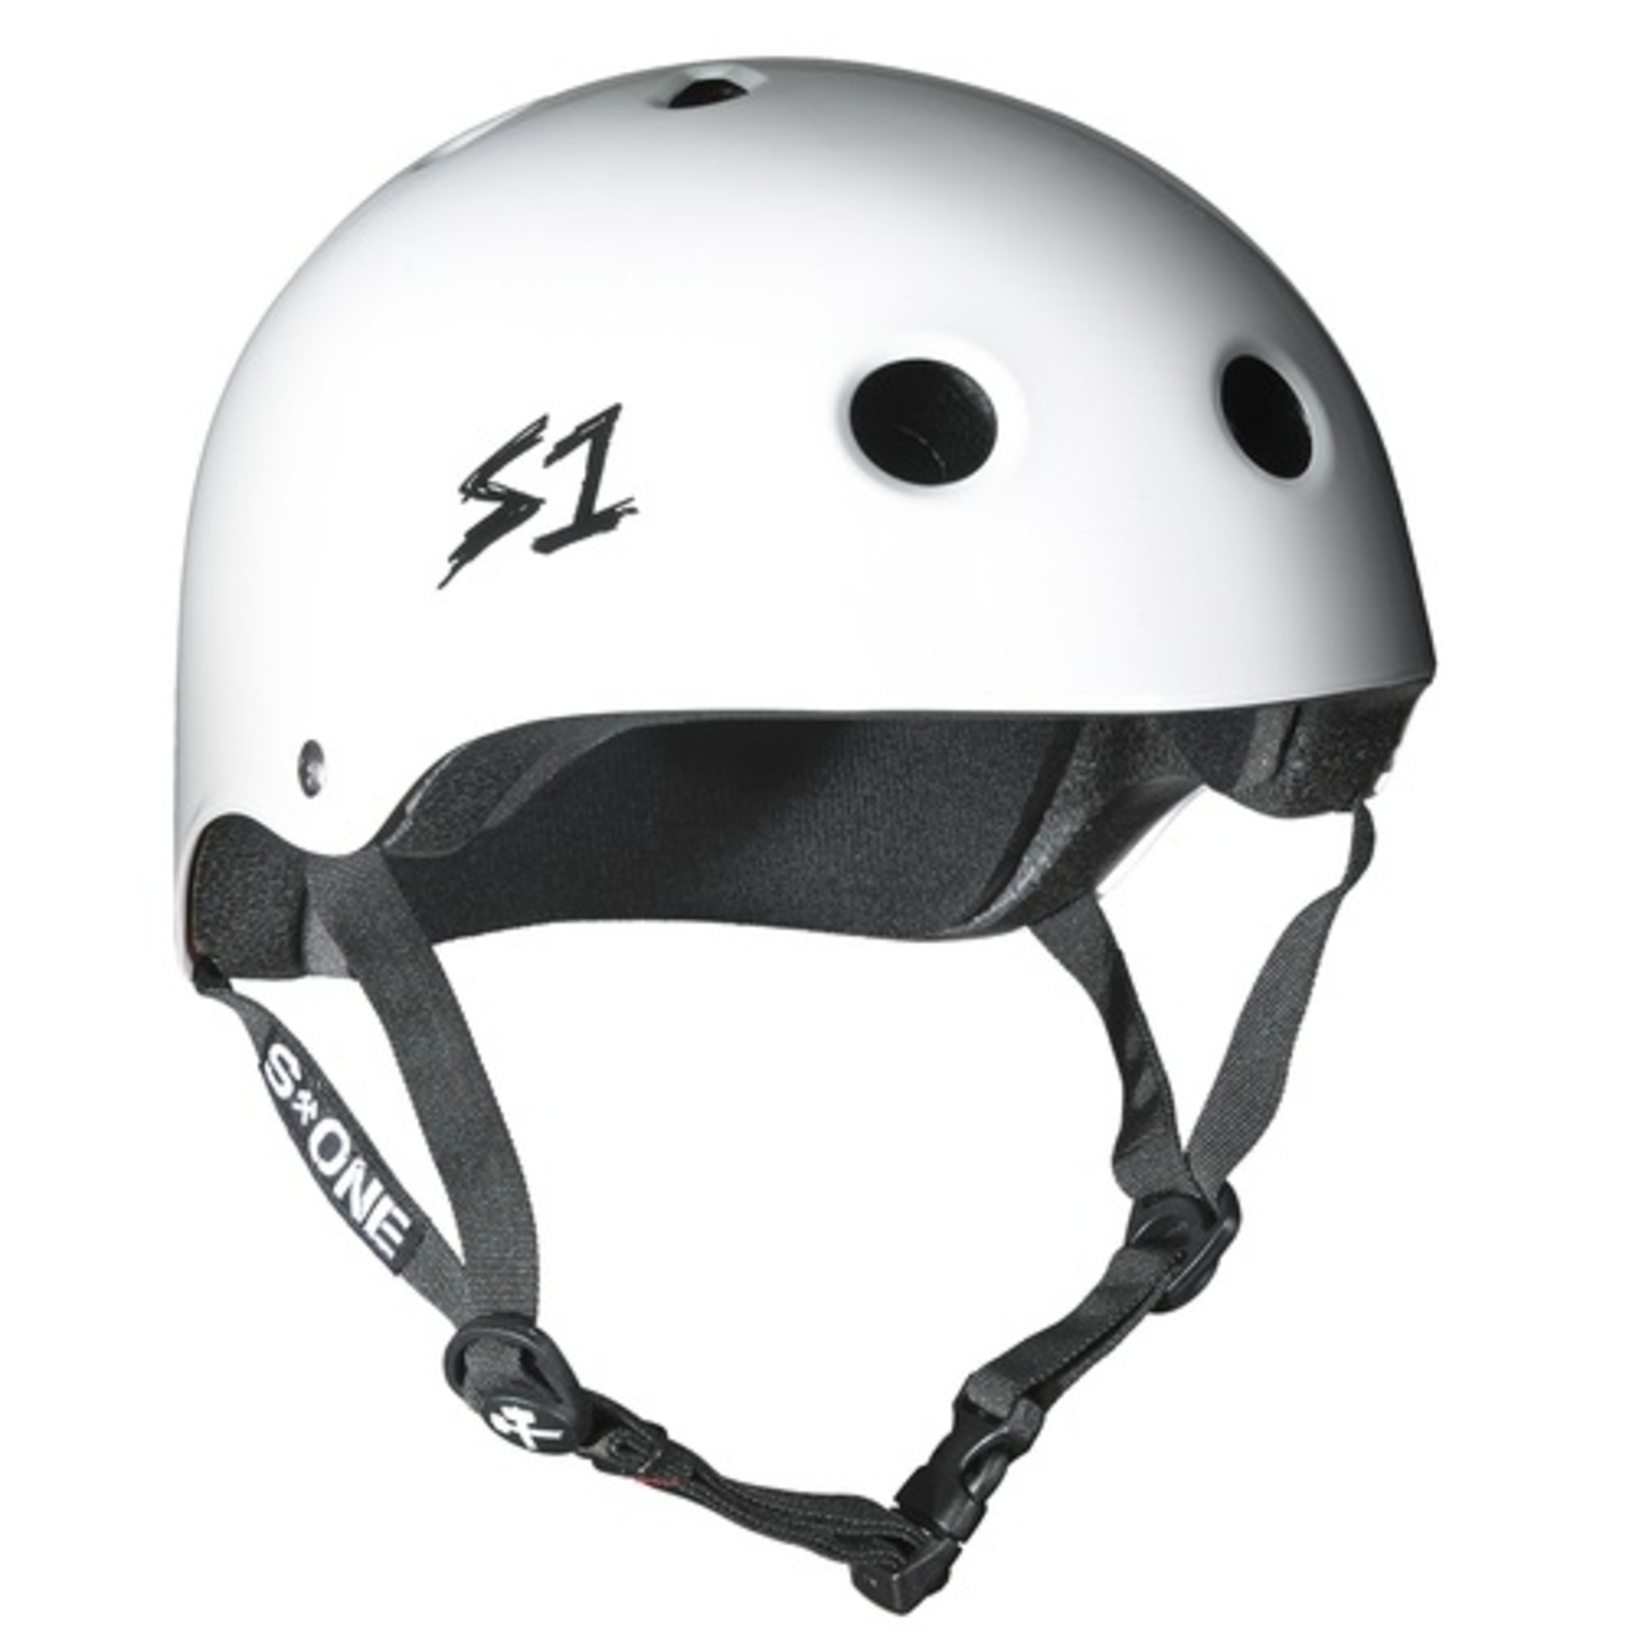 S1 S1 Lifer helmet